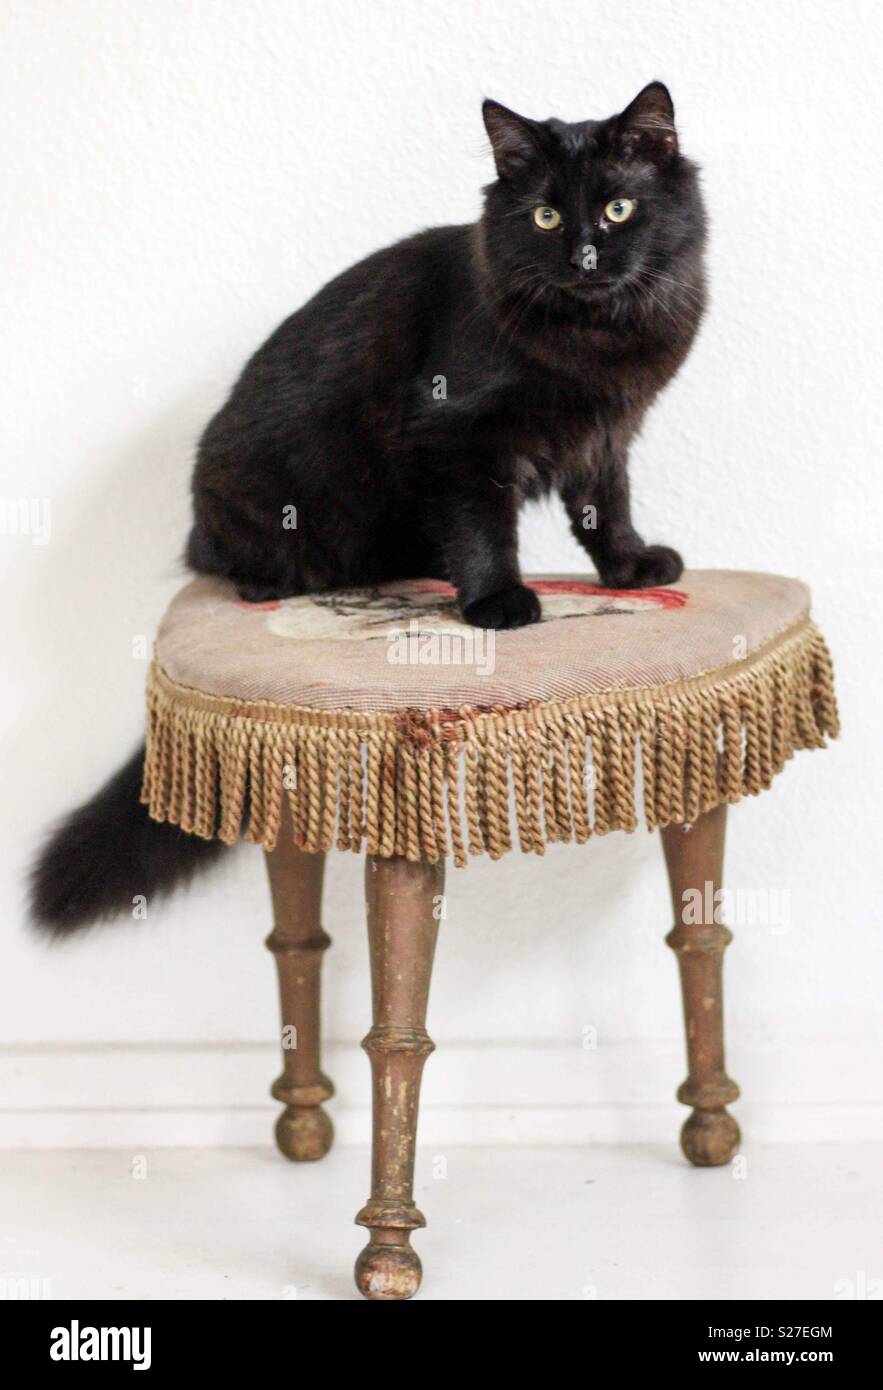 Gatto nero seduto su uno sgabello Foto Stock